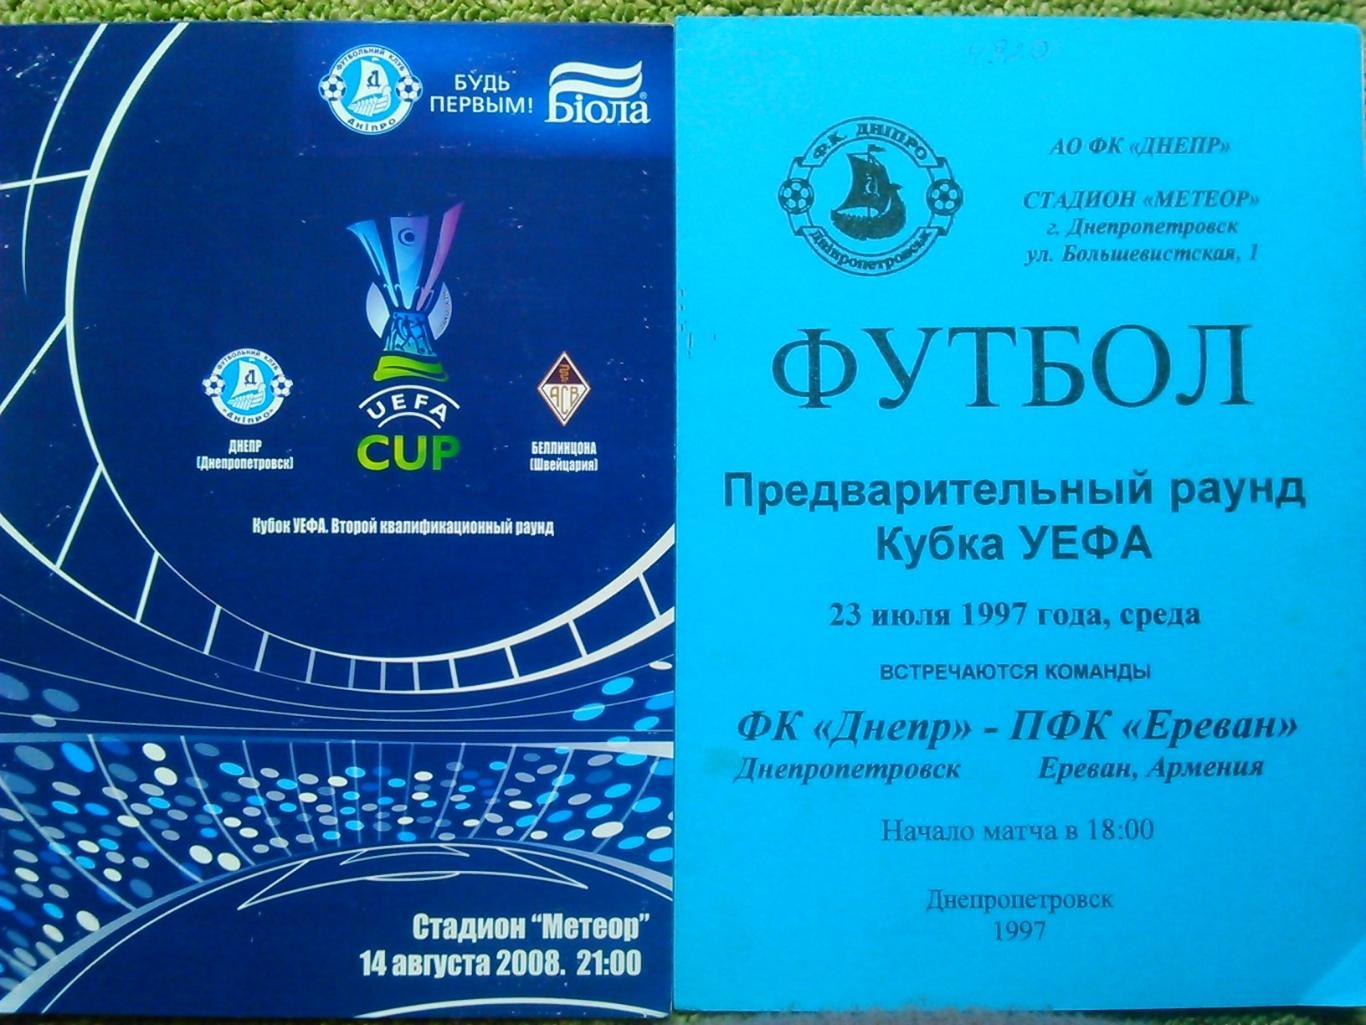 ДНЕПР Днепропетровск - ПФК Ереван 23.07.1997. Оптом скидки до 45%